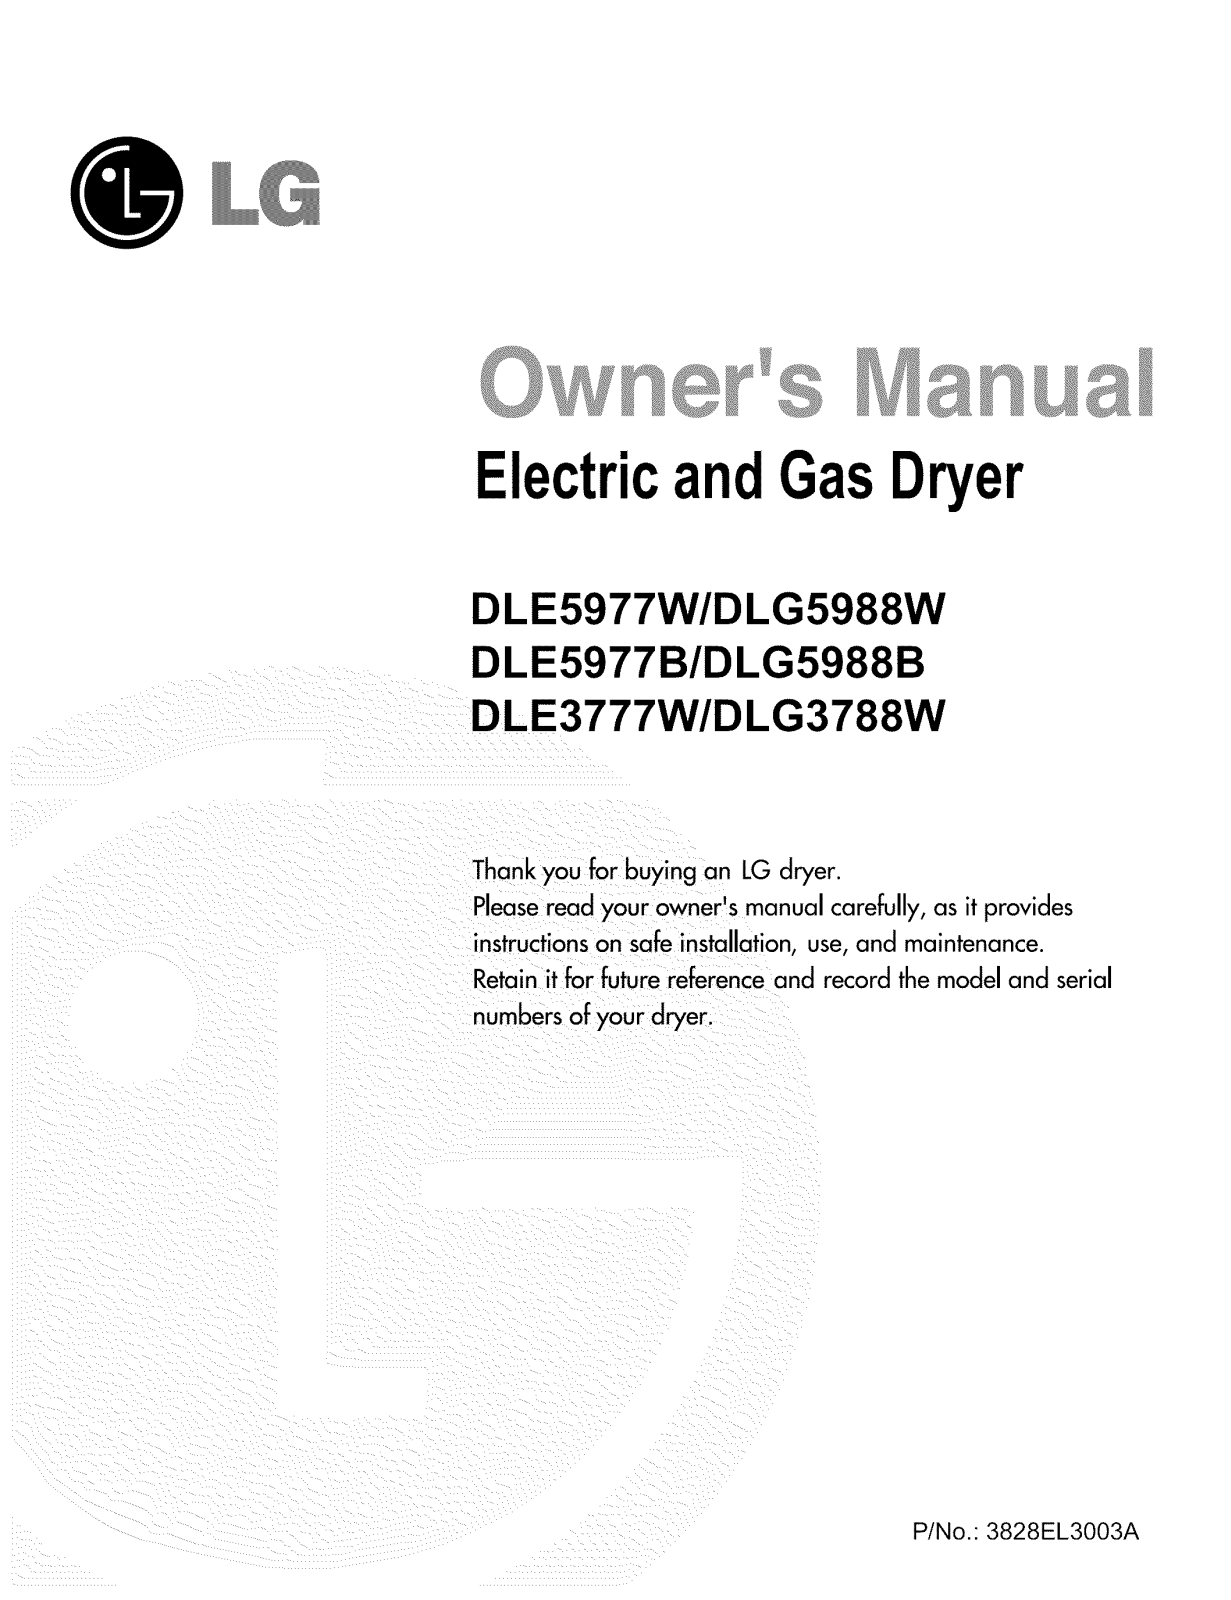 LG DLG5988W, DLG5988S, DLG5988B, DLG3788W, DLE5977S Owner’s Manual